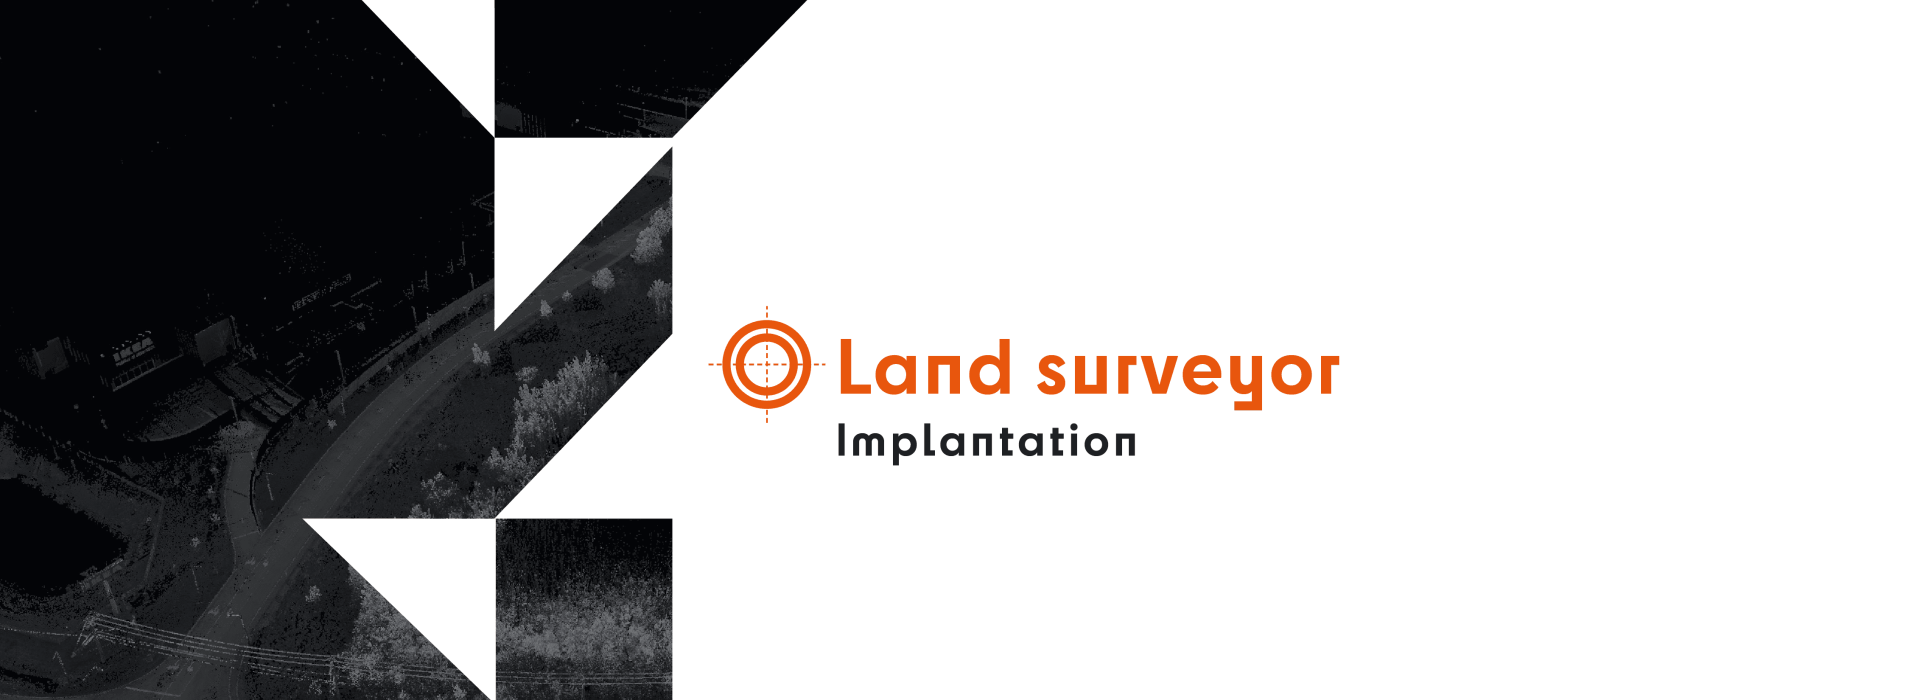 ANGLAIS_WebBanner_Land surveyor - Implatation